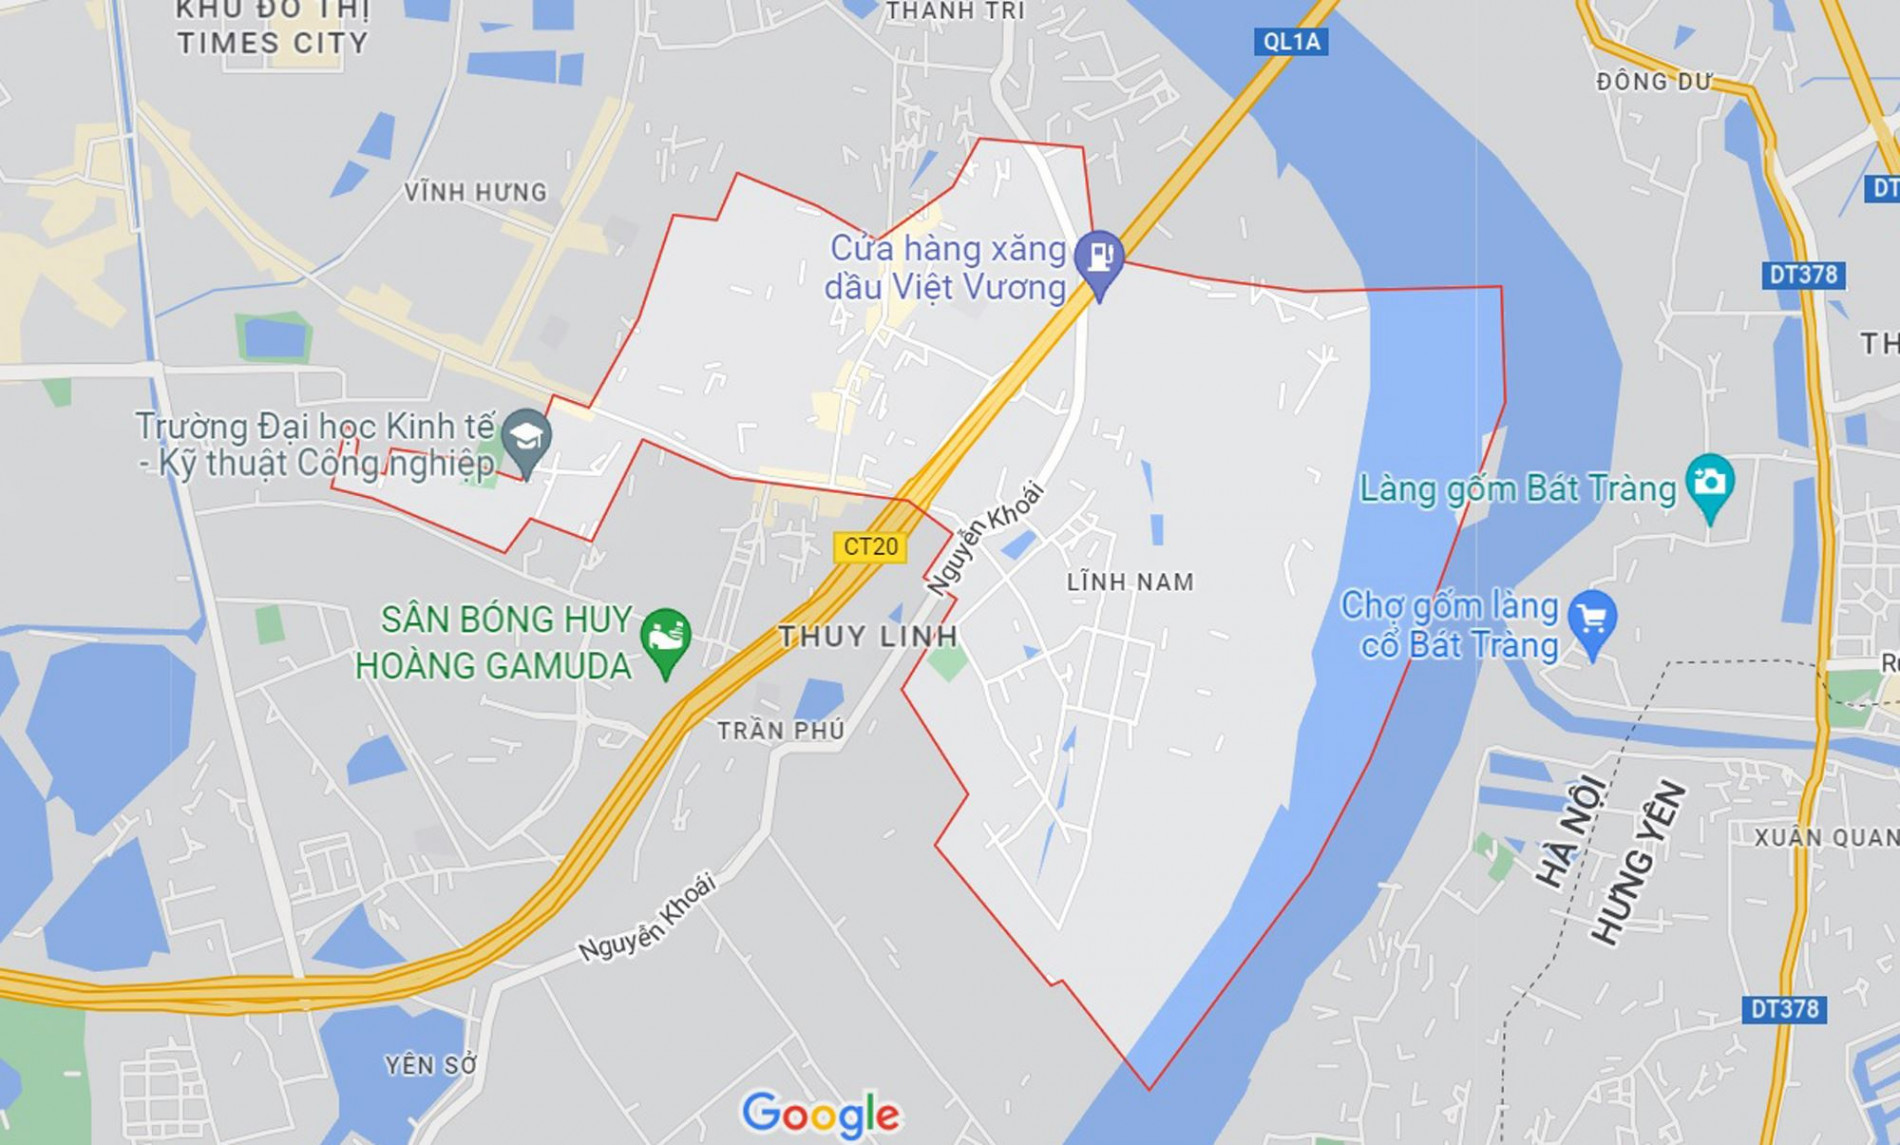 Đường sẽ mở theo quy hoạch ở phường Lĩnh Nam, Hoàng Mai, Hà Nội (phần 3)